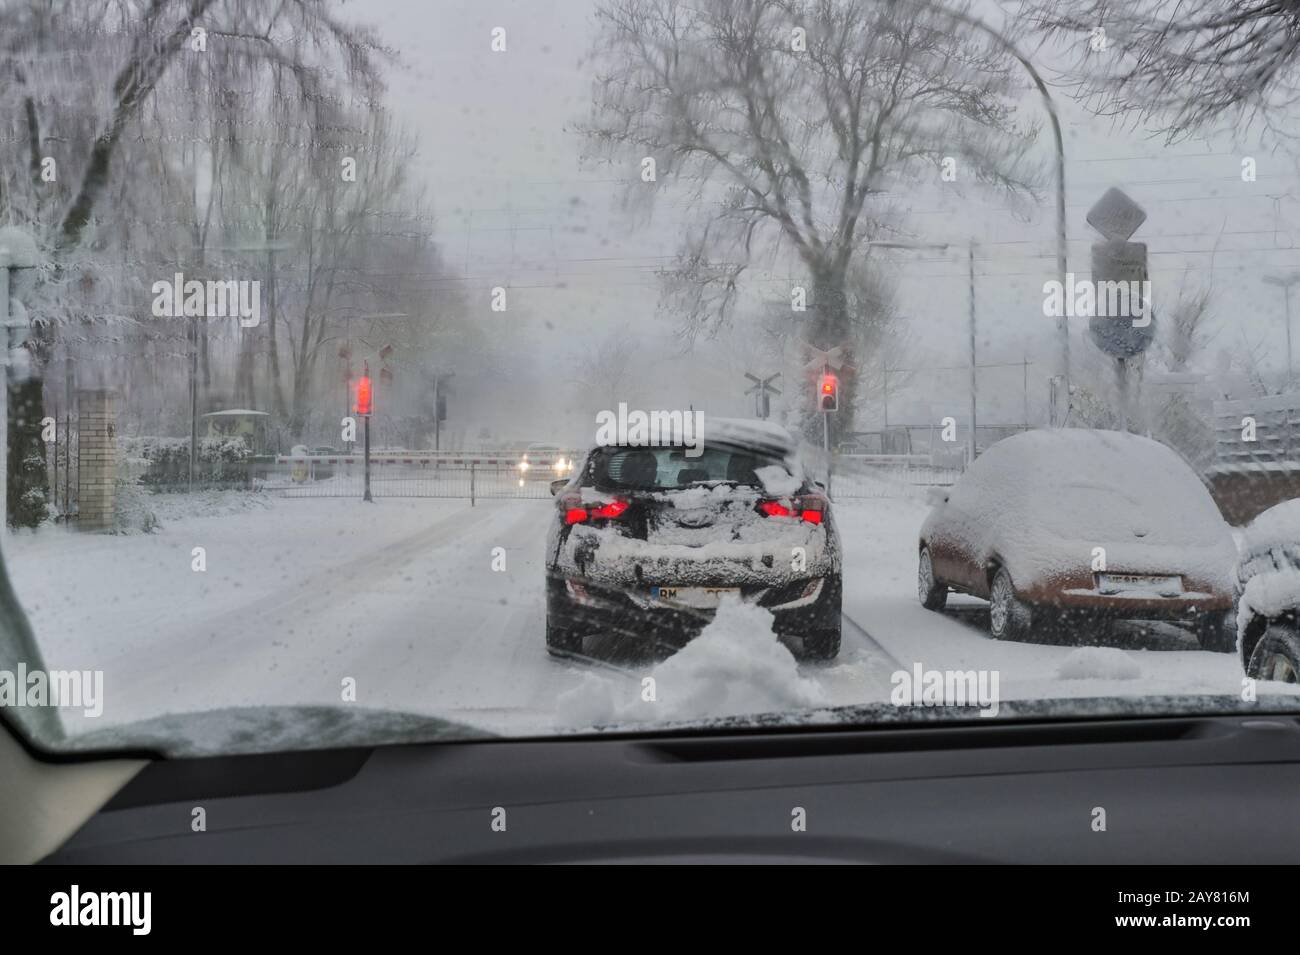 Une voiture se tient dans la neige flurerie devant des barrières ferrées fermées. Banque D'Images